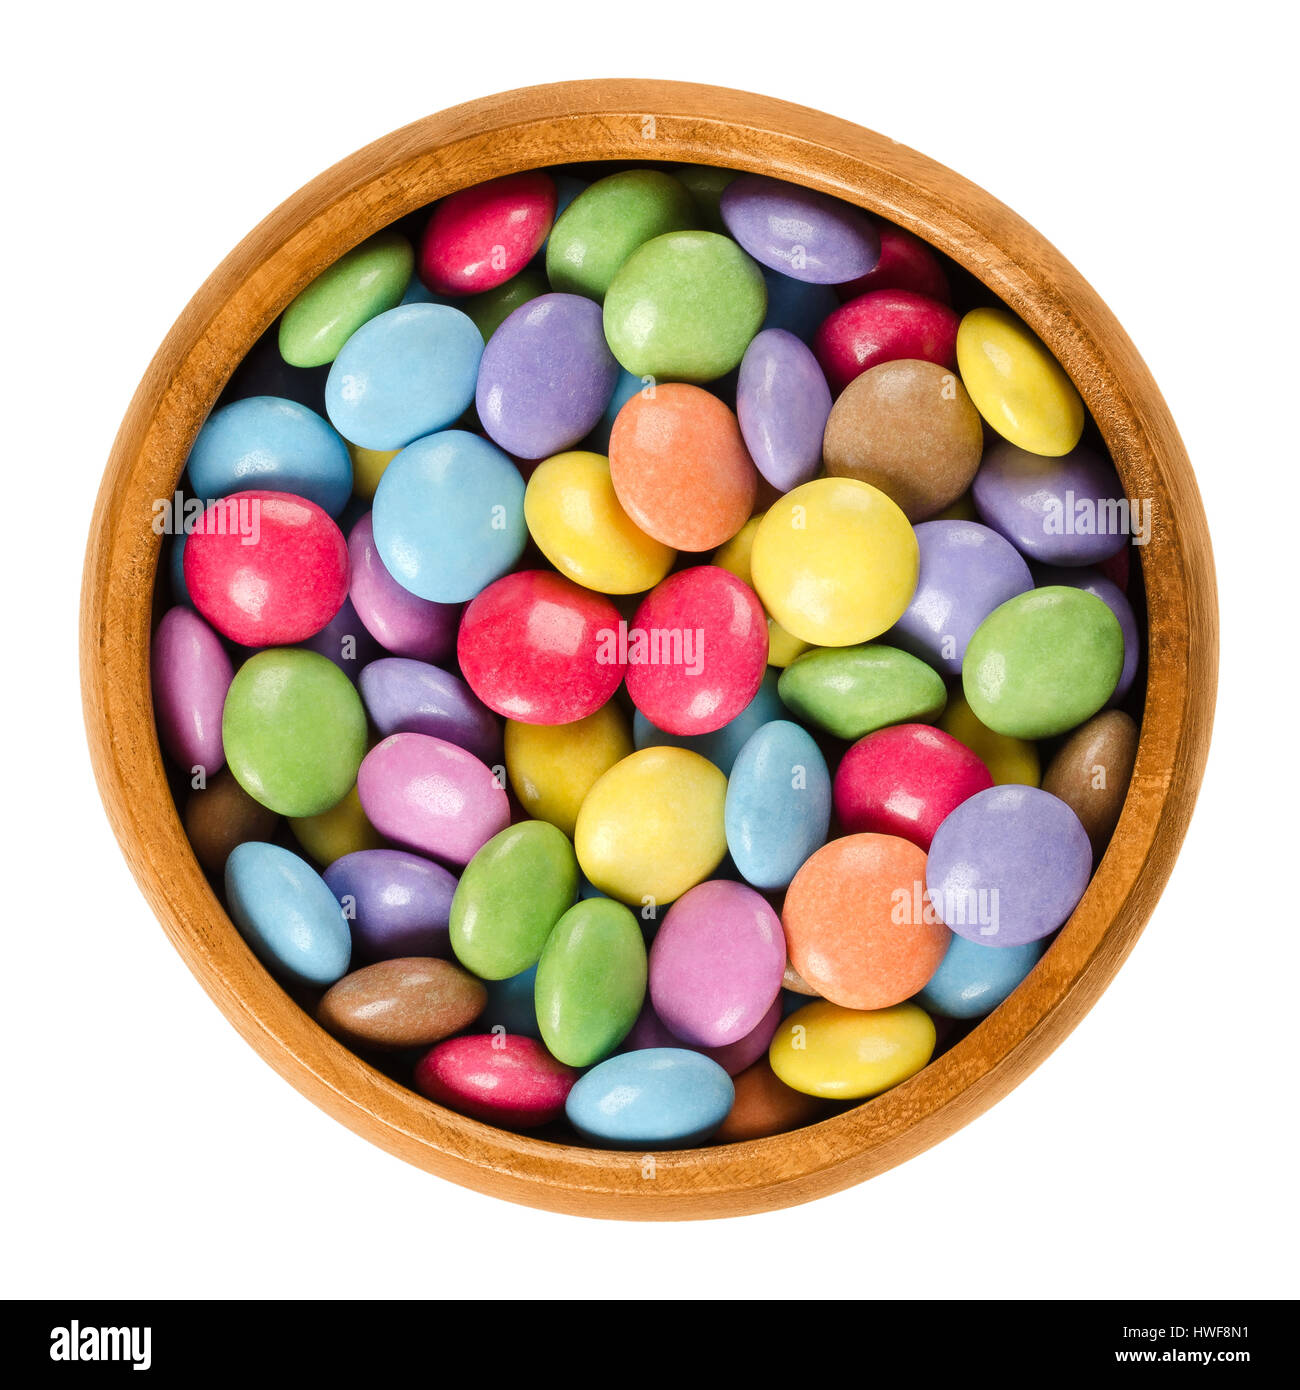 Coloridos dulces de chocolate en el recipiente de madera. Confitería de chocolate recubiertos de azúcar en ocho colores diferentes. Dulces con forma de esferoide oblato. Foto de stock